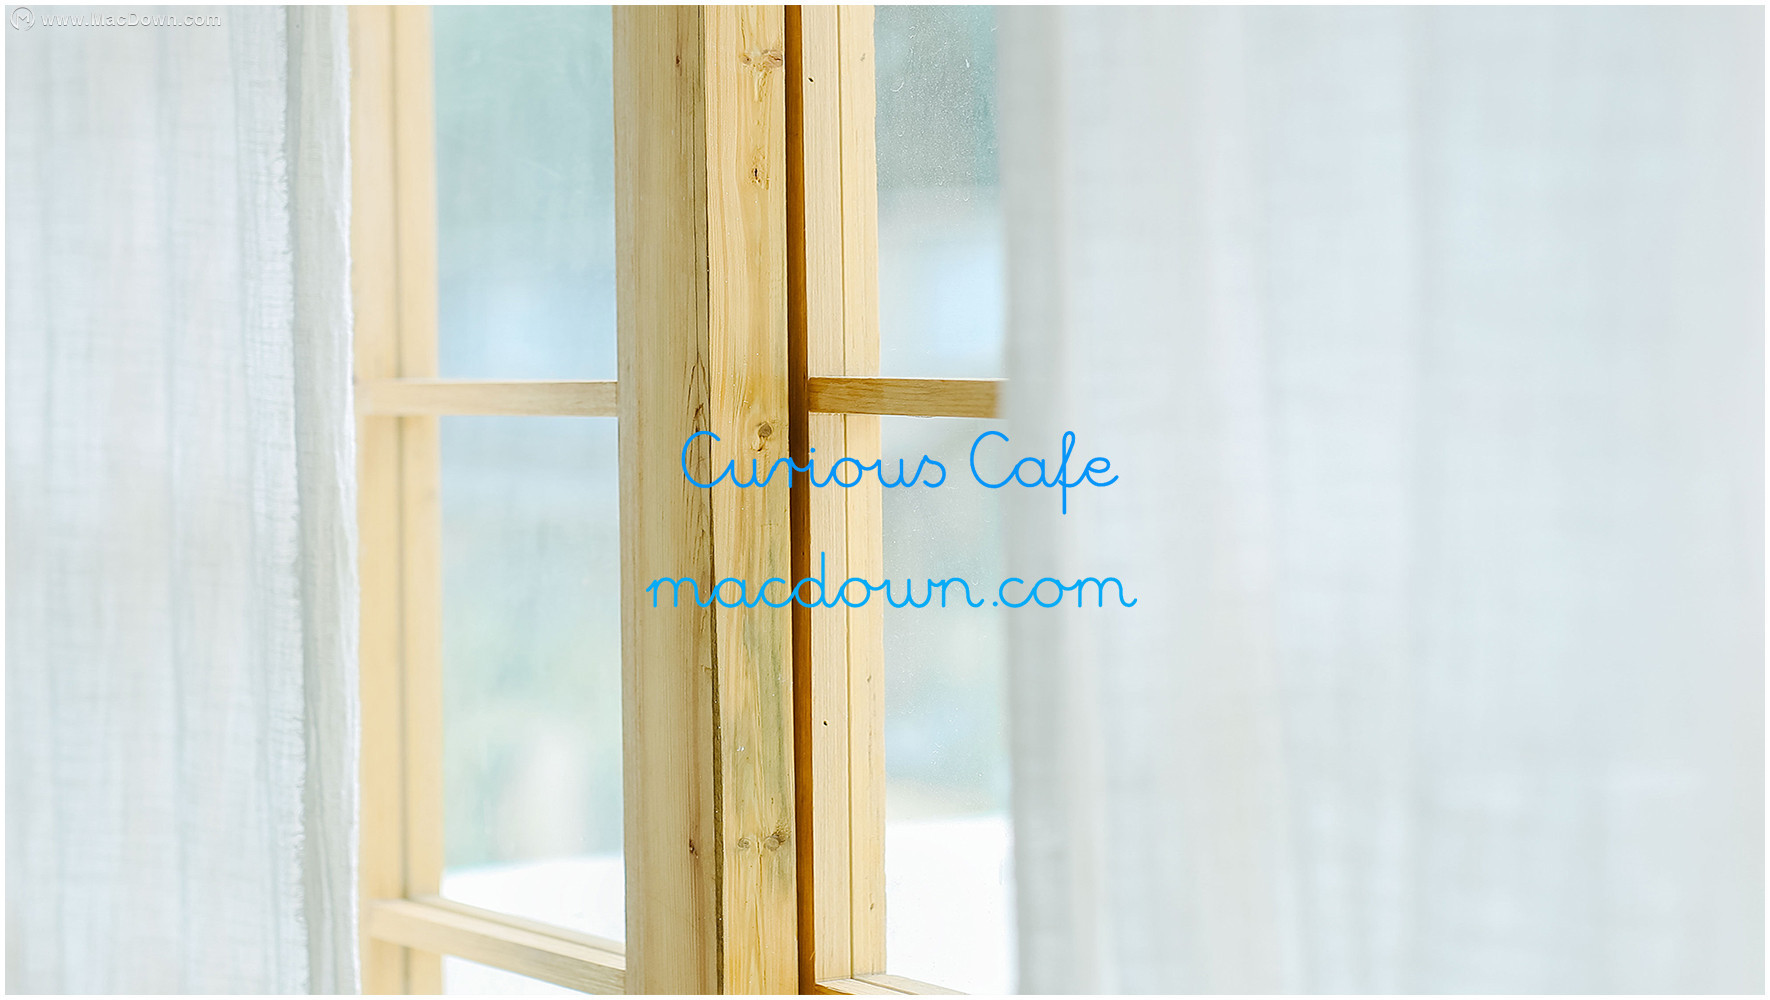 Curious Cafe风格Mac字体包